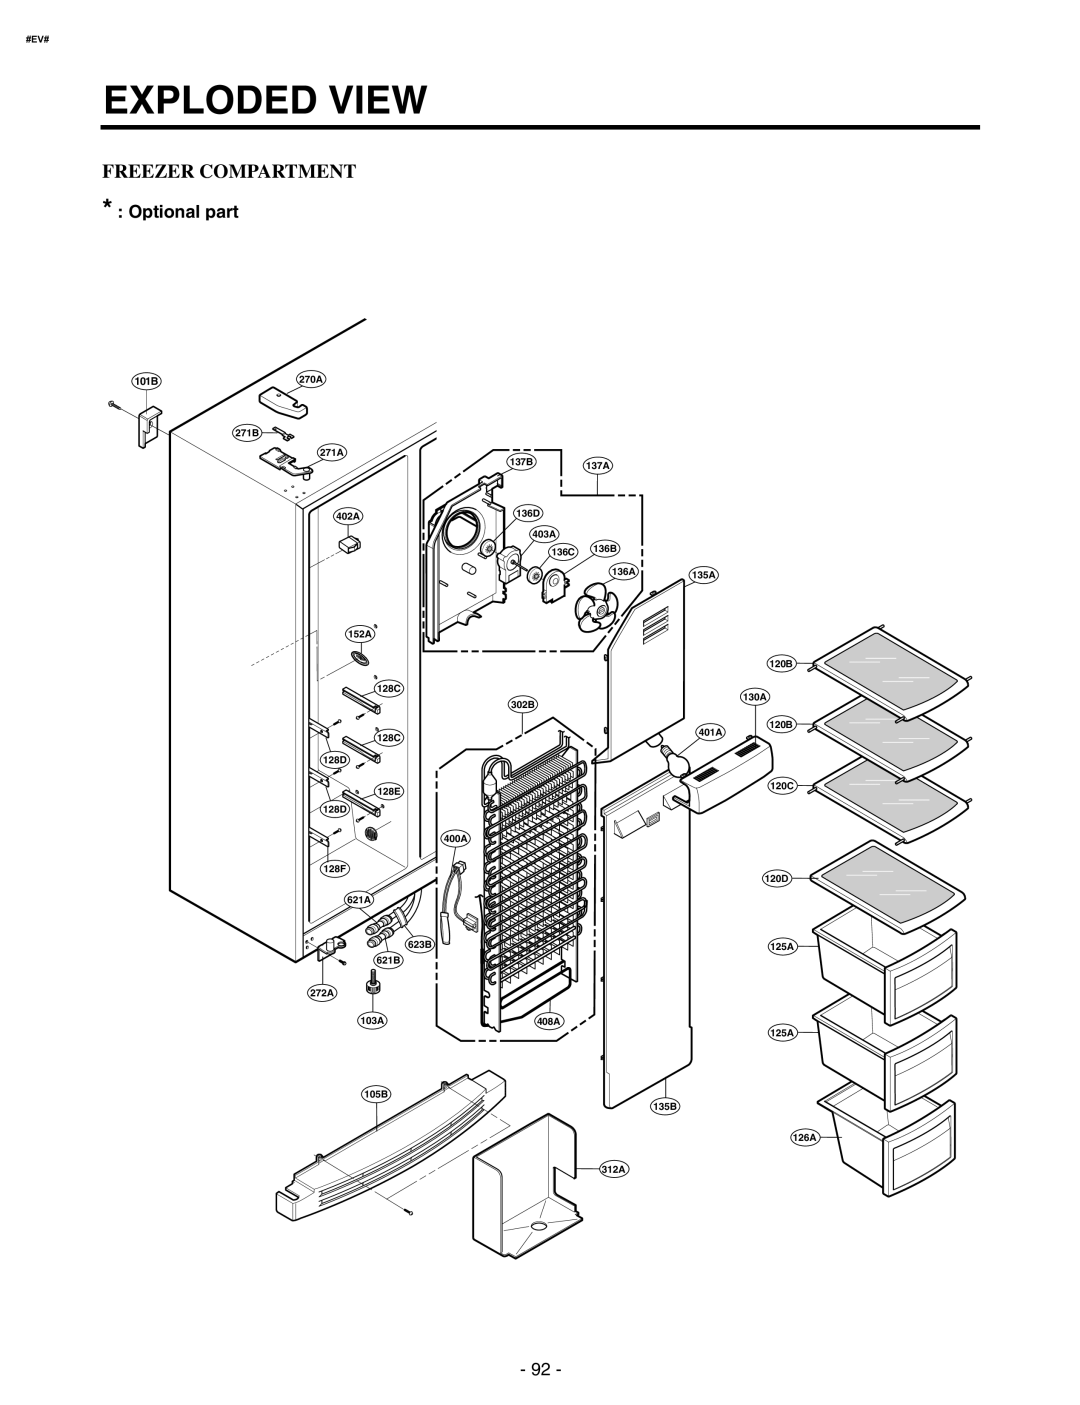 LG Electronics GR-P227/L227, GR-P257/L257 service manual Freezer Compartment, Exploded View, Optional part, 101B, #Ev# 